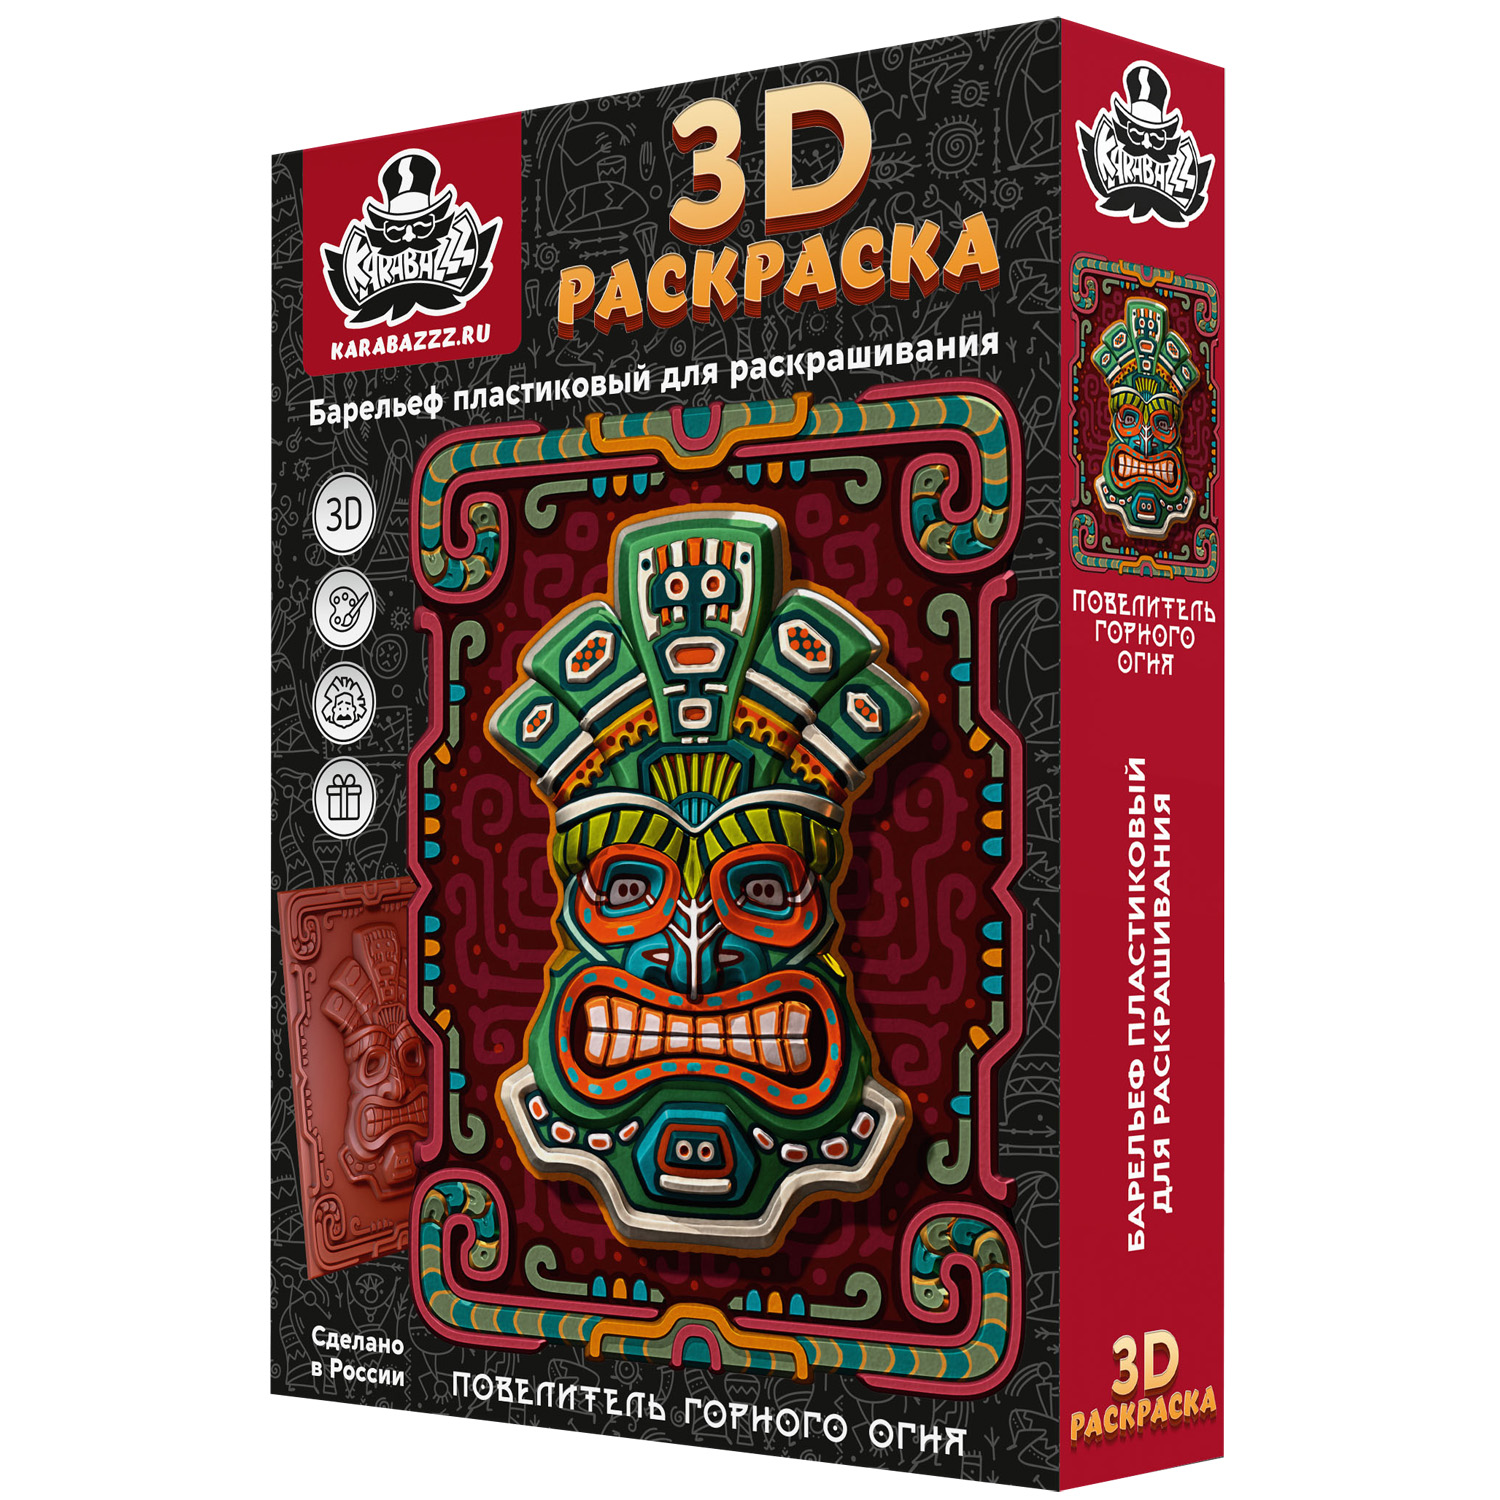 Набор для творчества KARABAZZZ Барельеф 3D раскраска Повелитель горного огня 25 на 35 см - фото 1